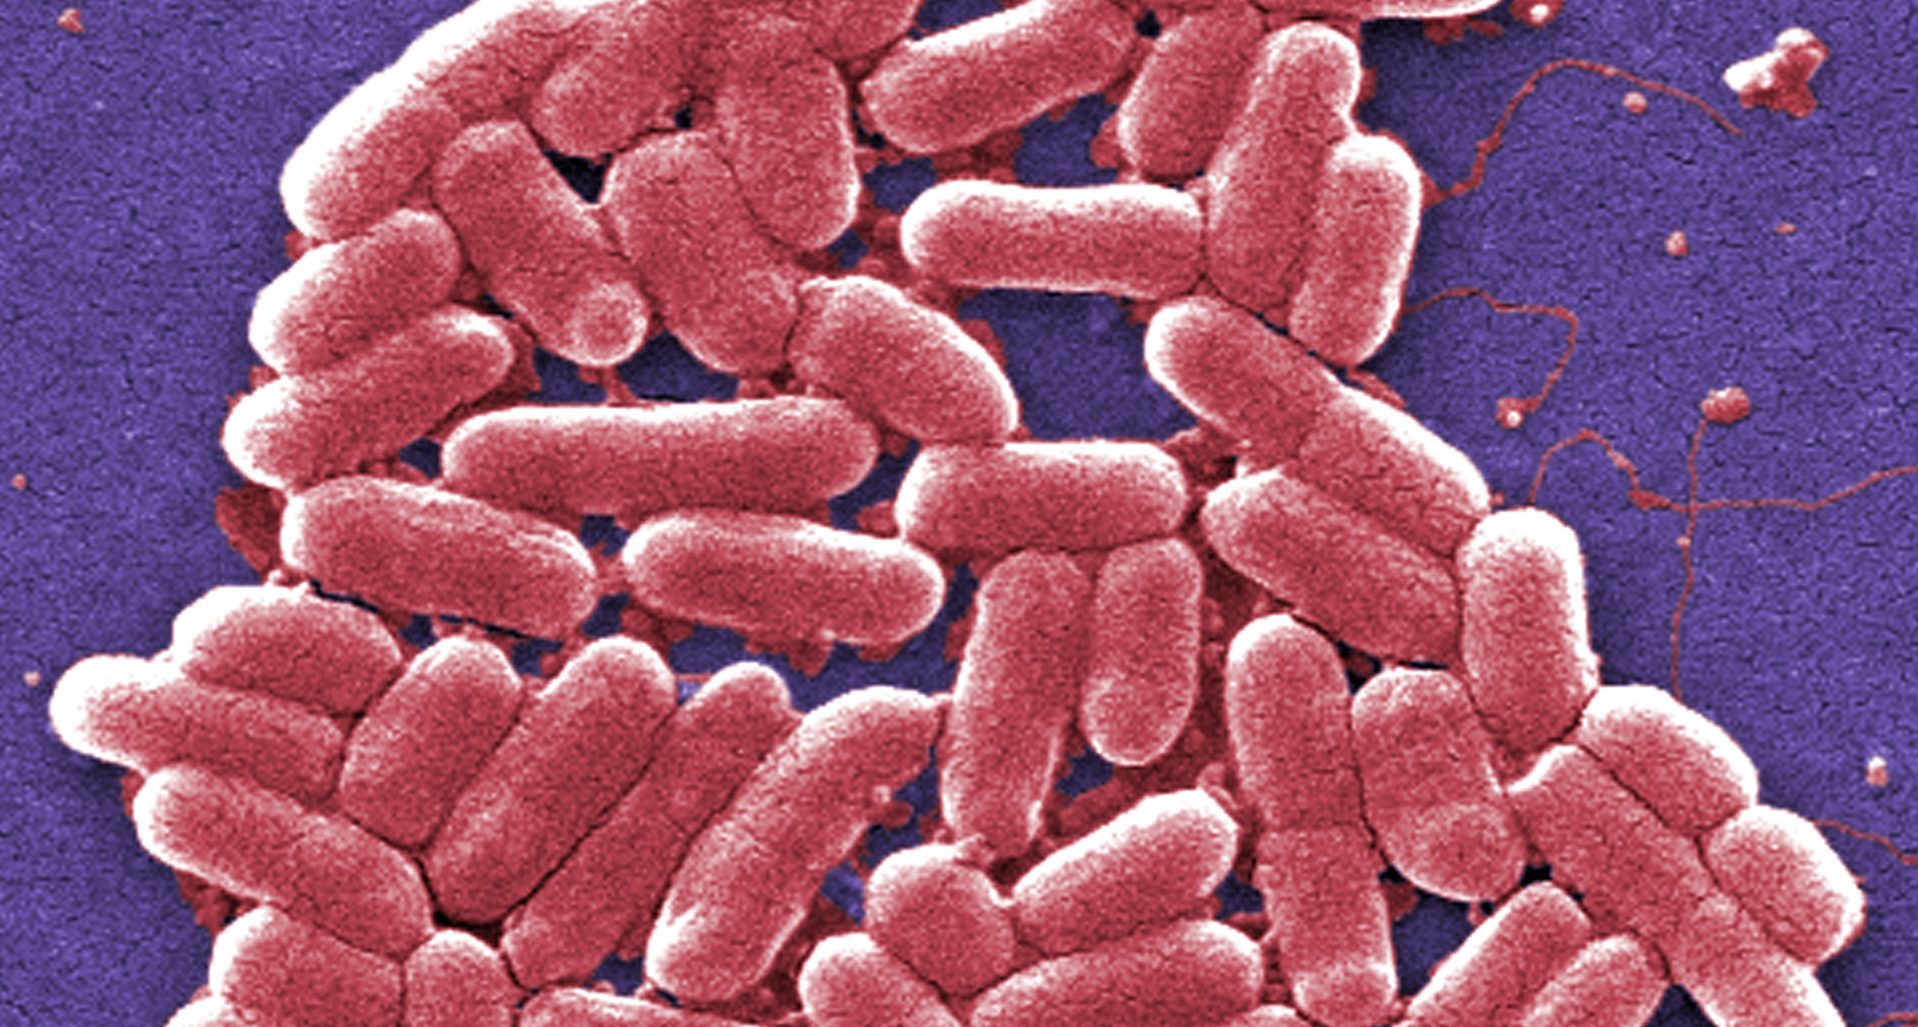 A magnified image of E. coli 0157 bacteria.